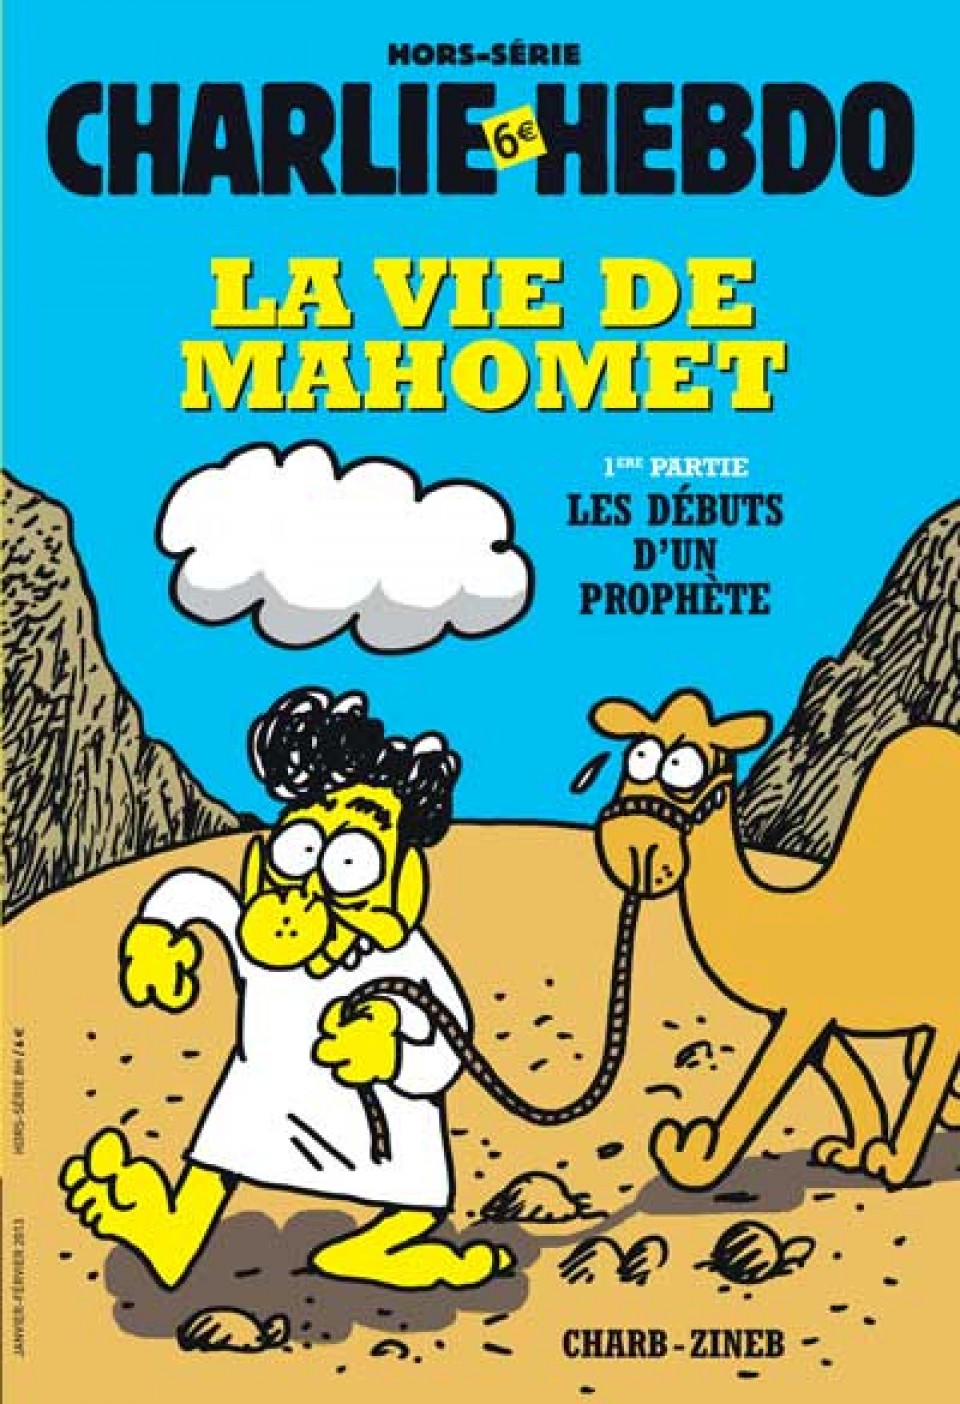 Charlie Hebdo portadak 